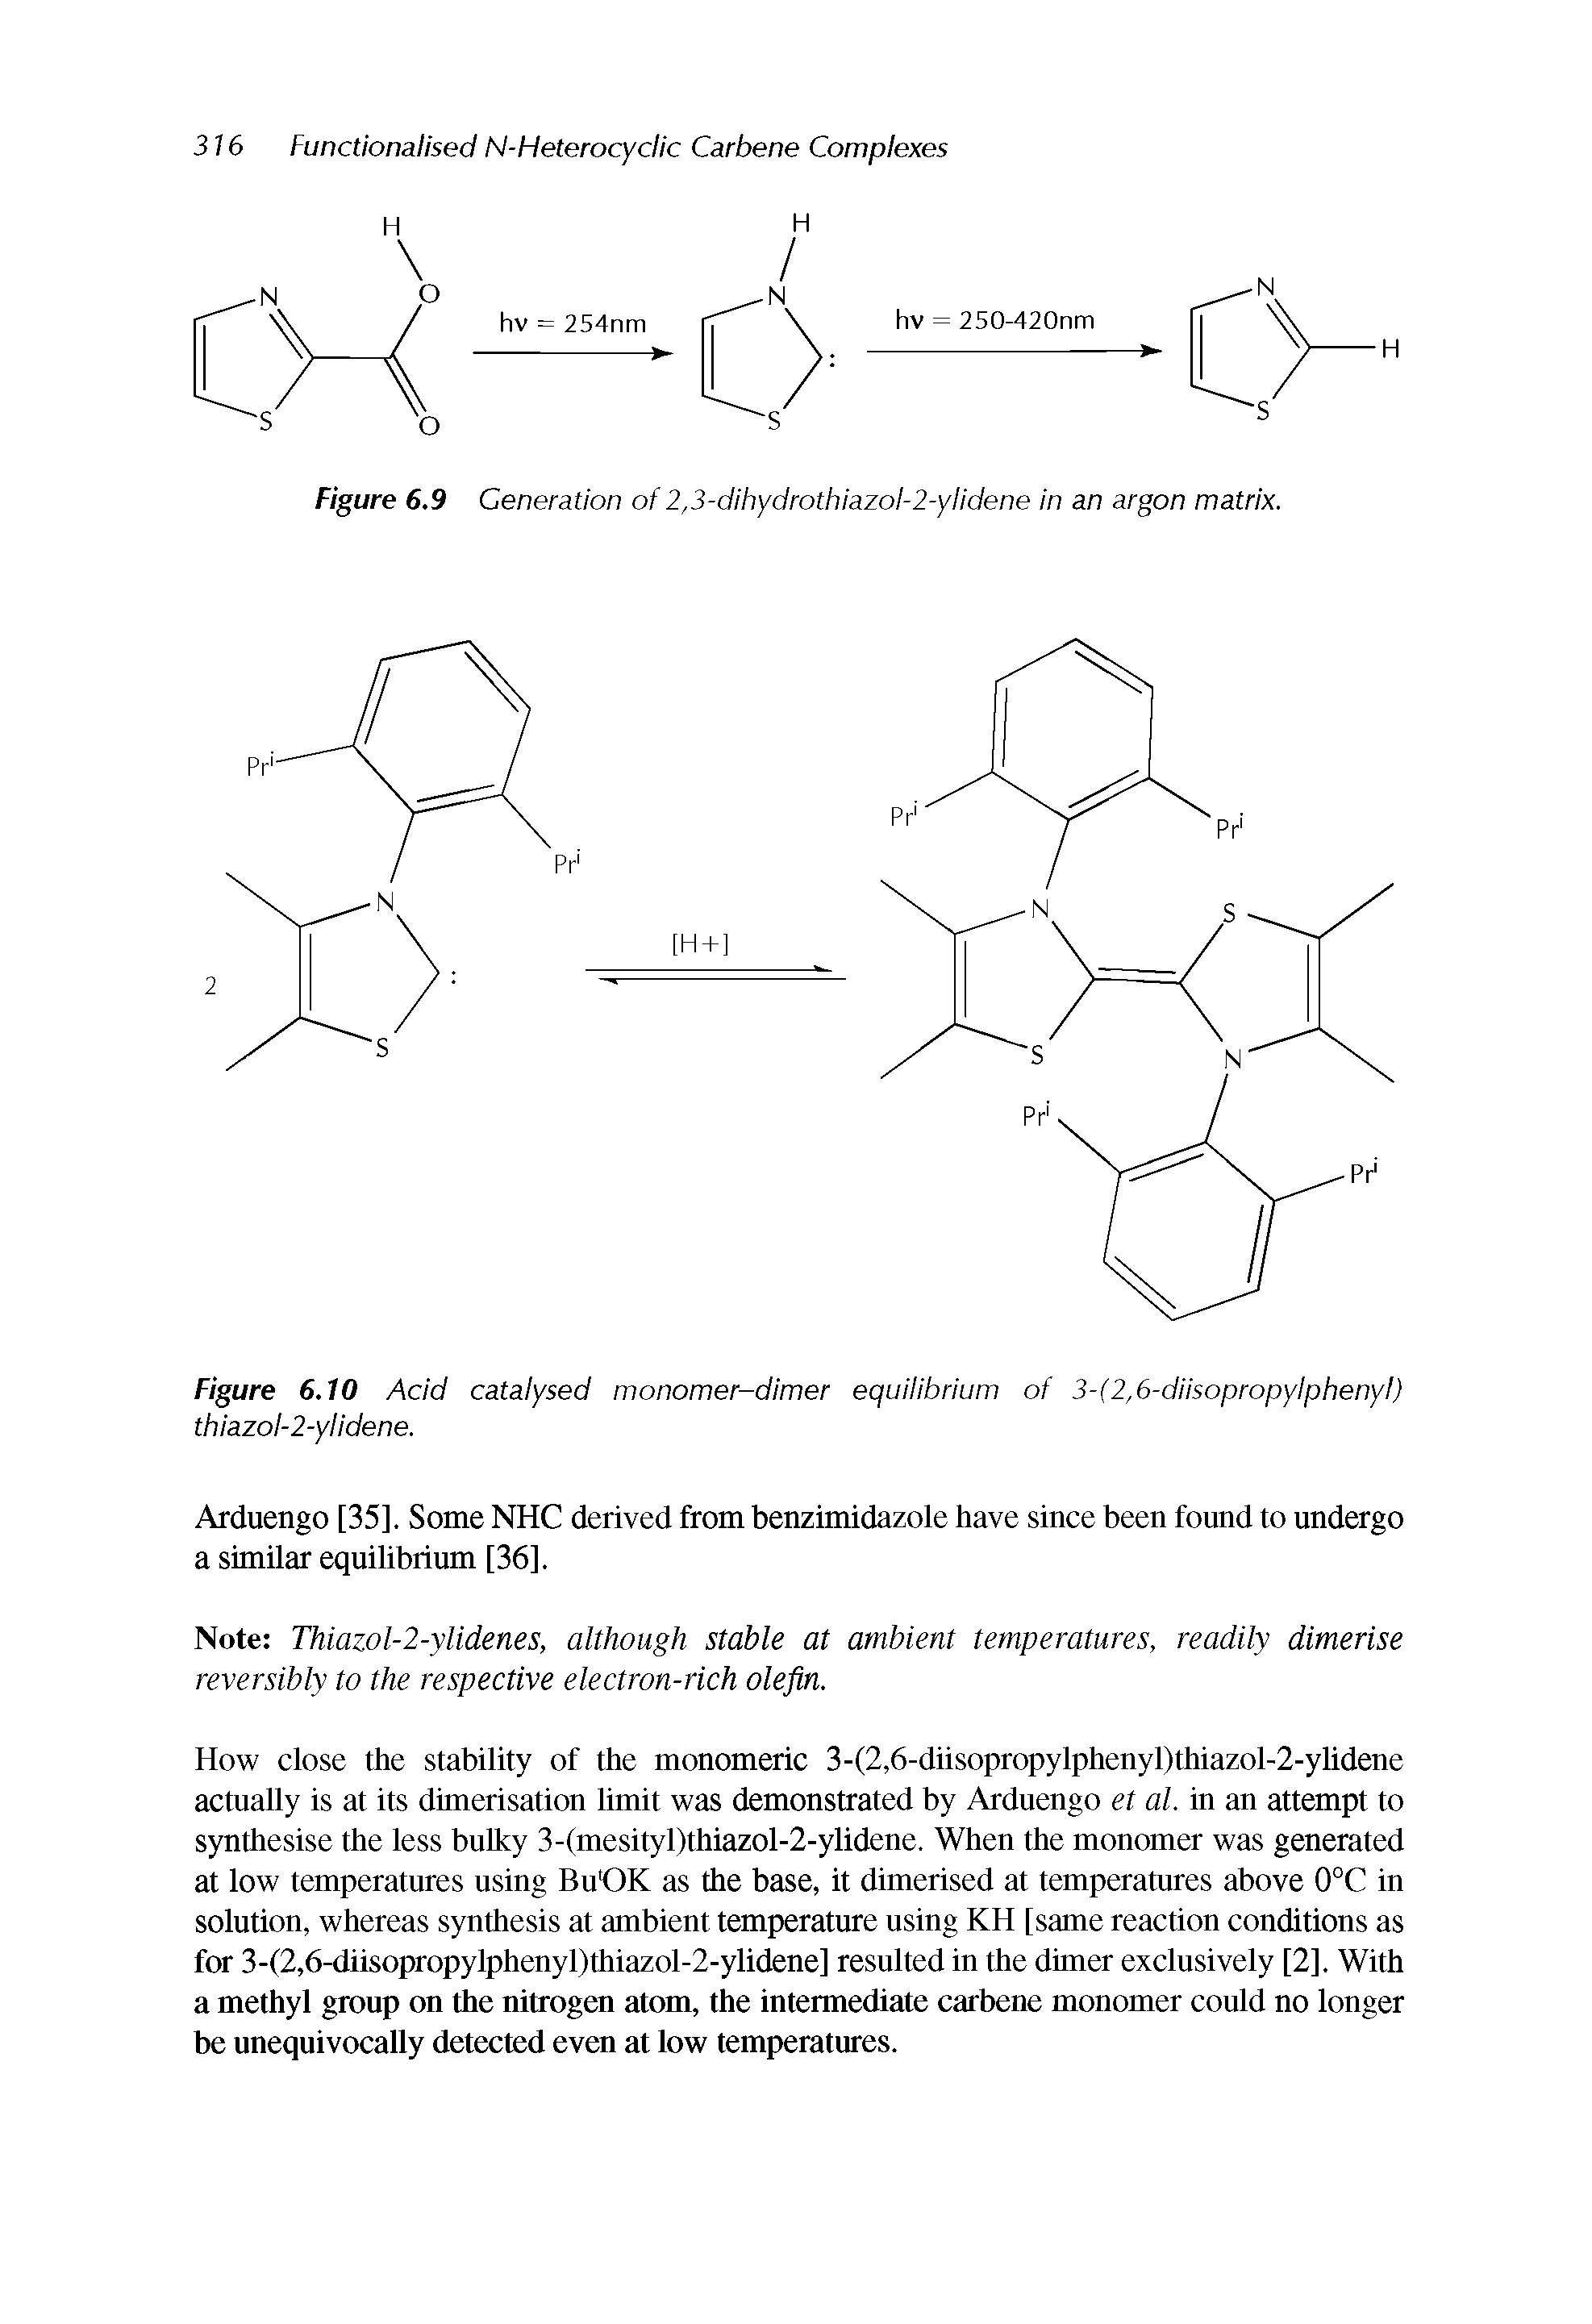 Figure 6.9 Generation of 2,3-dihydrothiazol-2-ylidene in an argon matrix.